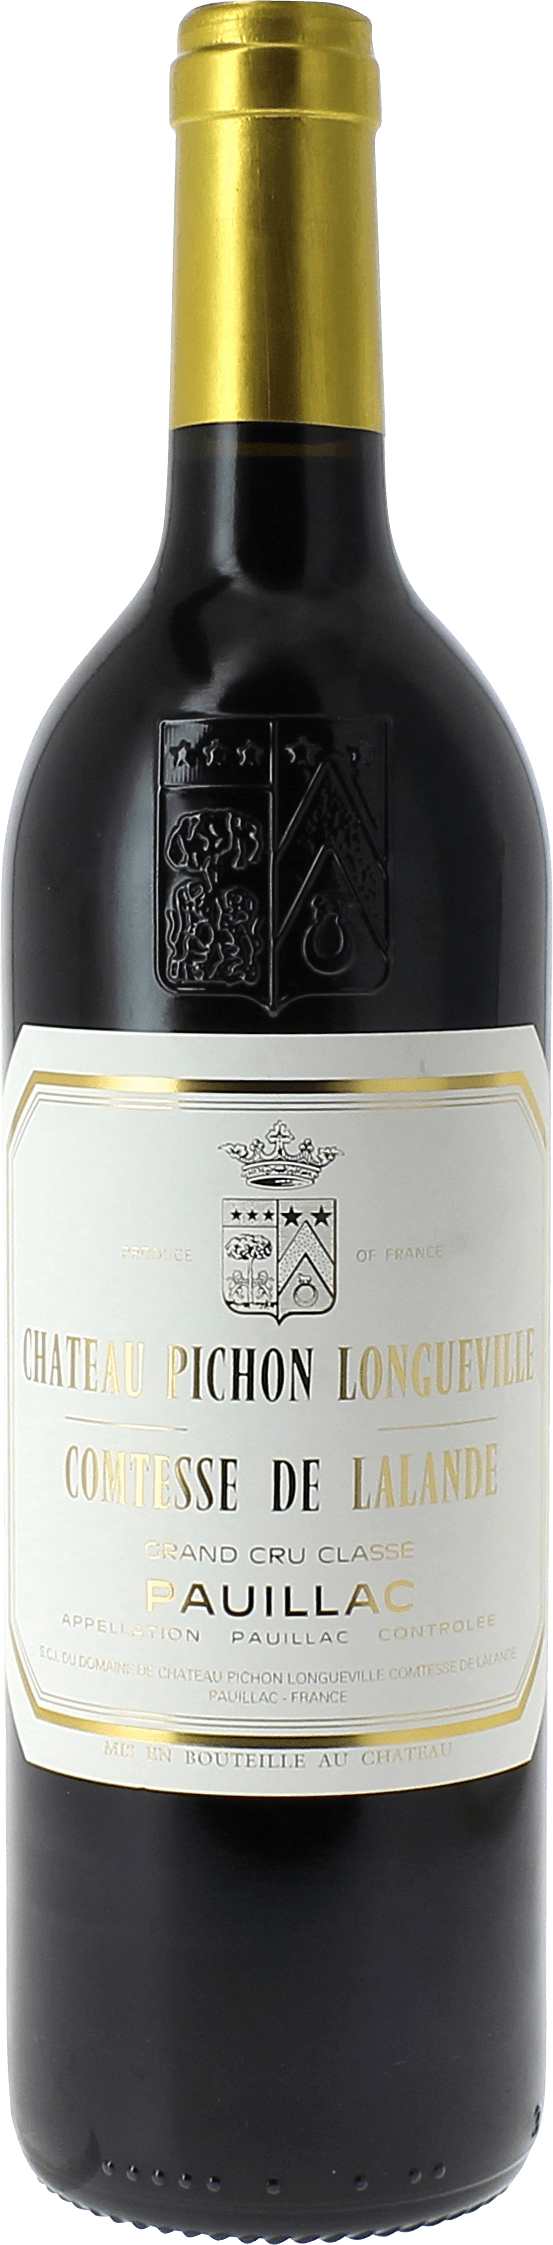 Pichon comtesse de lalande 2016 2me Grand cru class Pauillac, Bordeaux rouge